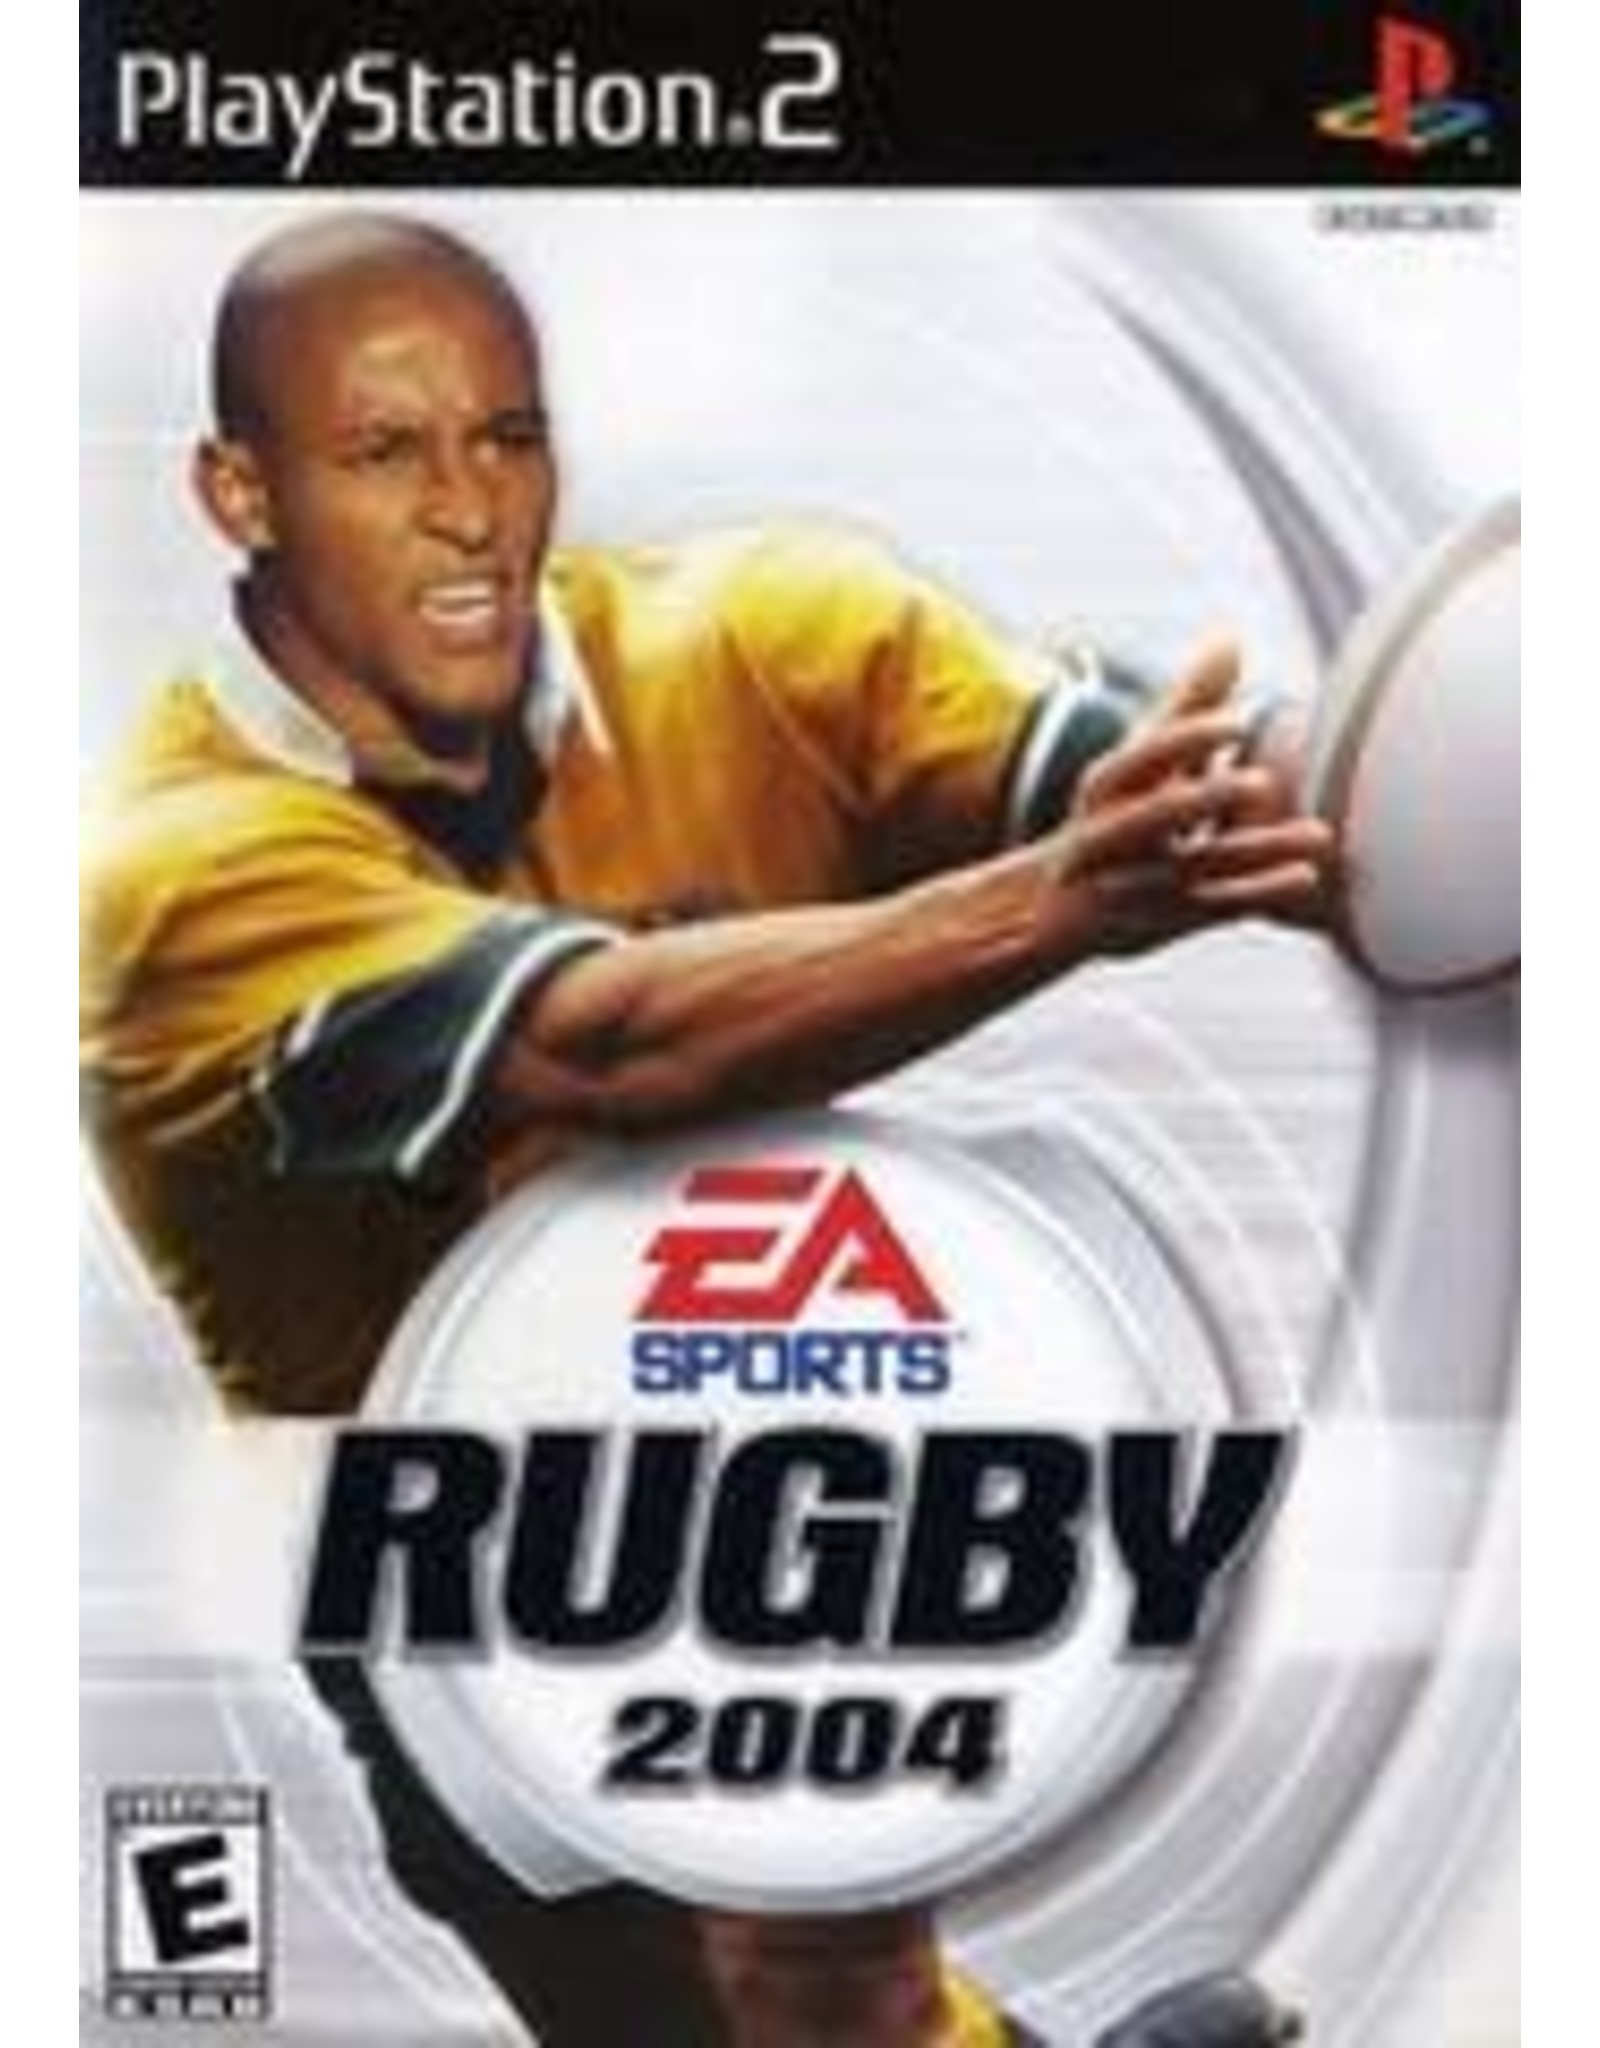 Playstation 2 Rugby 2004 (CiB)